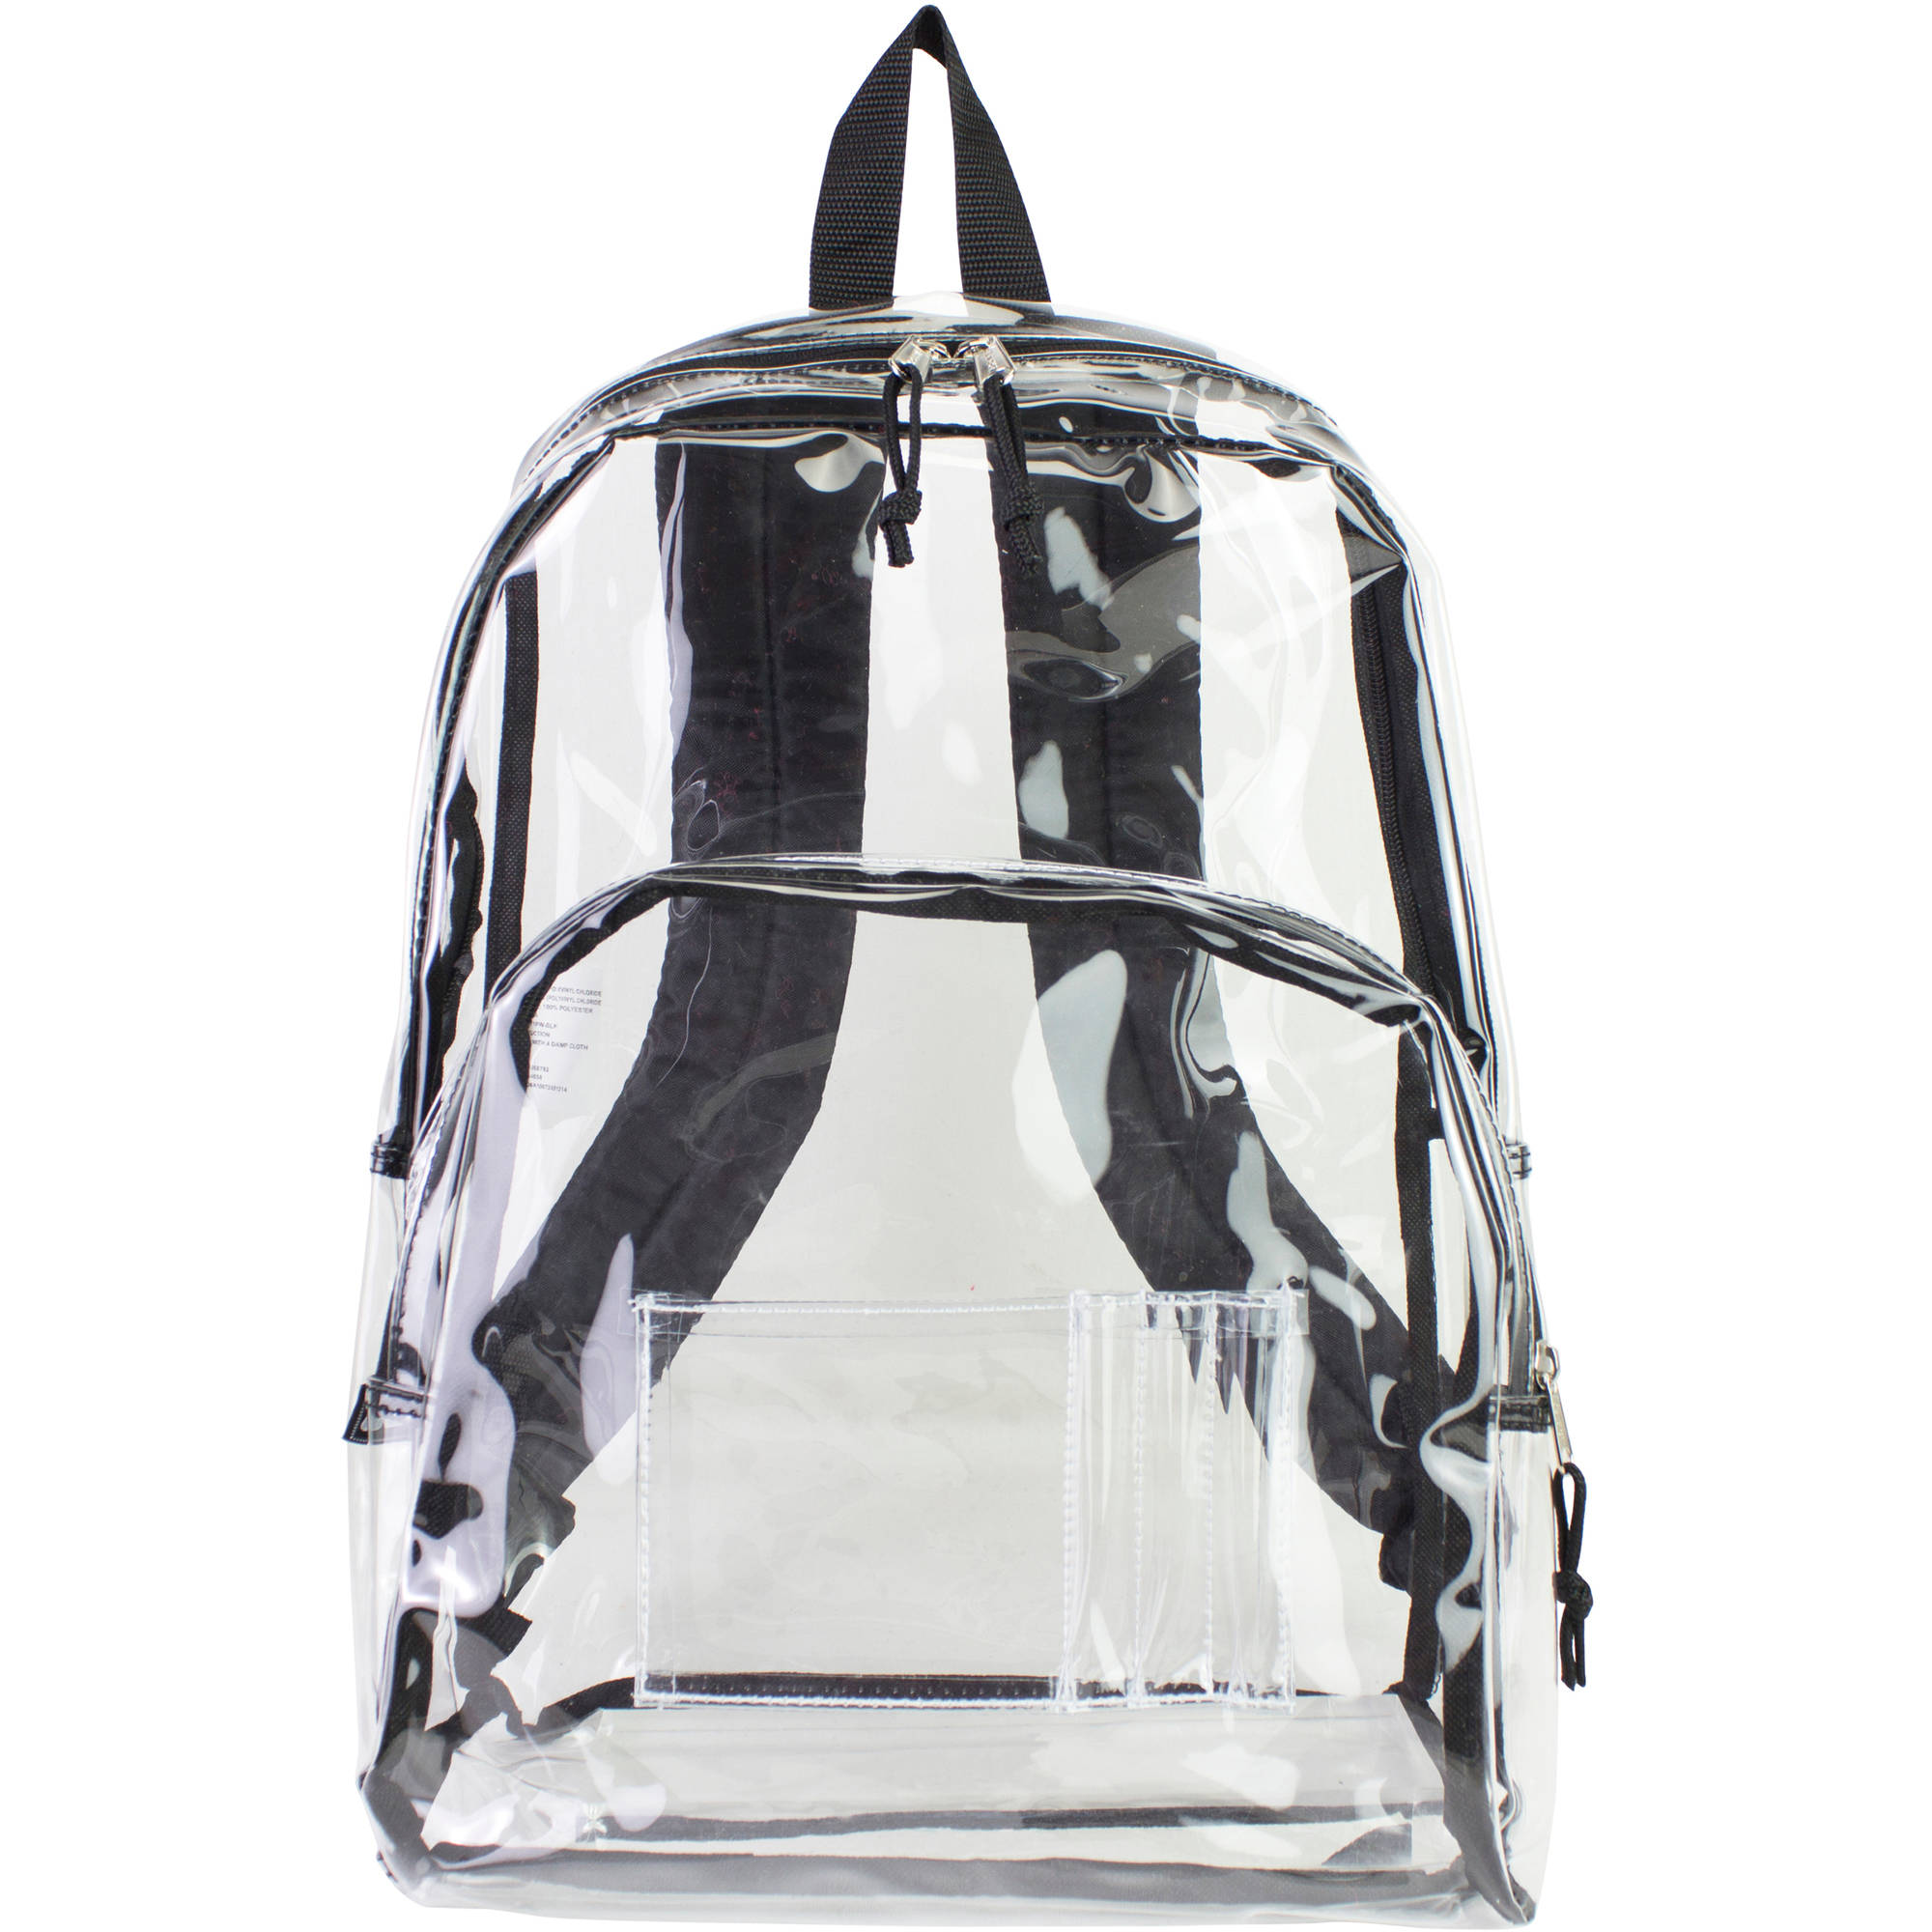 Eastsport Clear Backpack with Front Pocket and Adjustable Padded Shoulder Straps - image 2 of 4